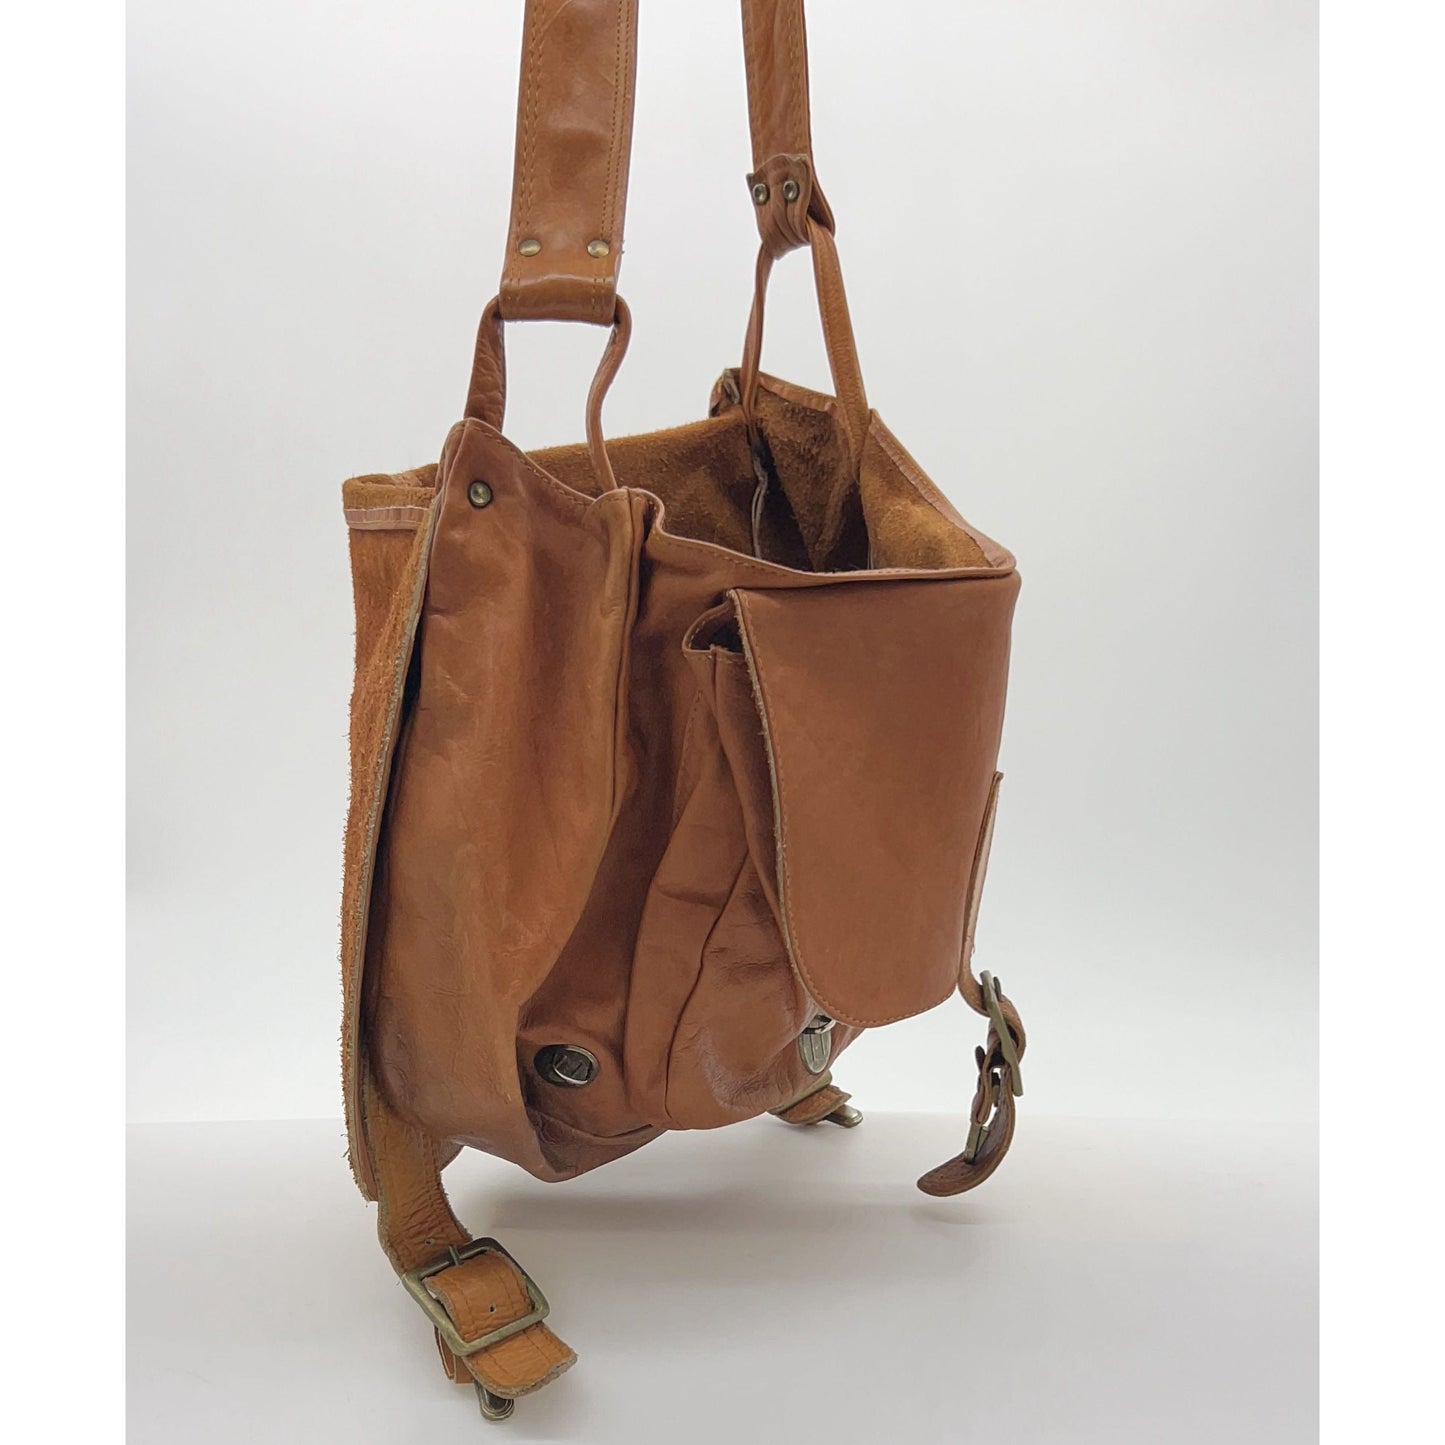 Leather Saddle Bag, Shoulder or Crossbody Bag